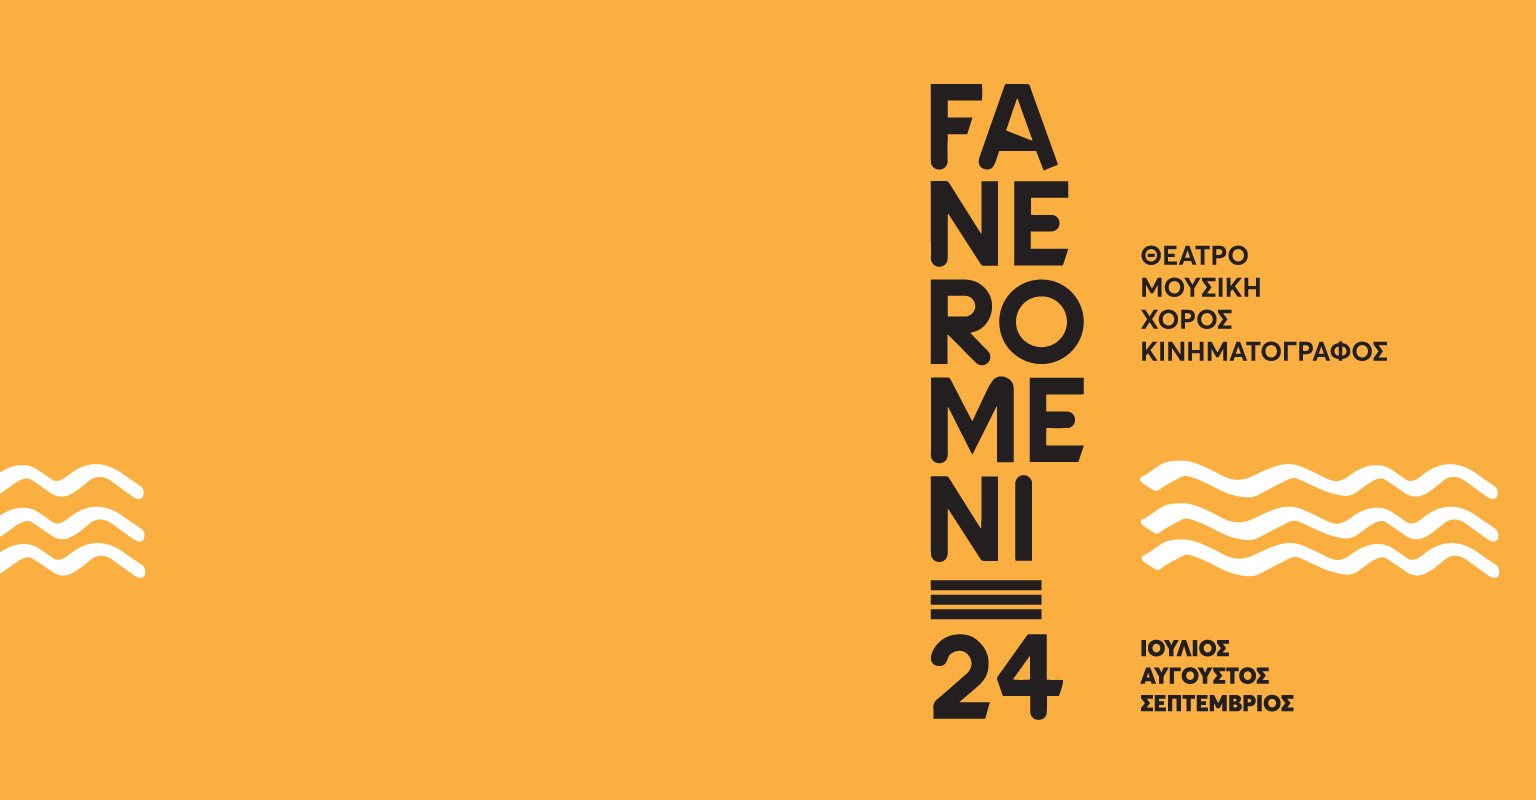 Φεστιβάλ Τεχνών FANEROMENI24 στο Πολιτιστικό Ίδρυμα Τραπέζης Κύπρου